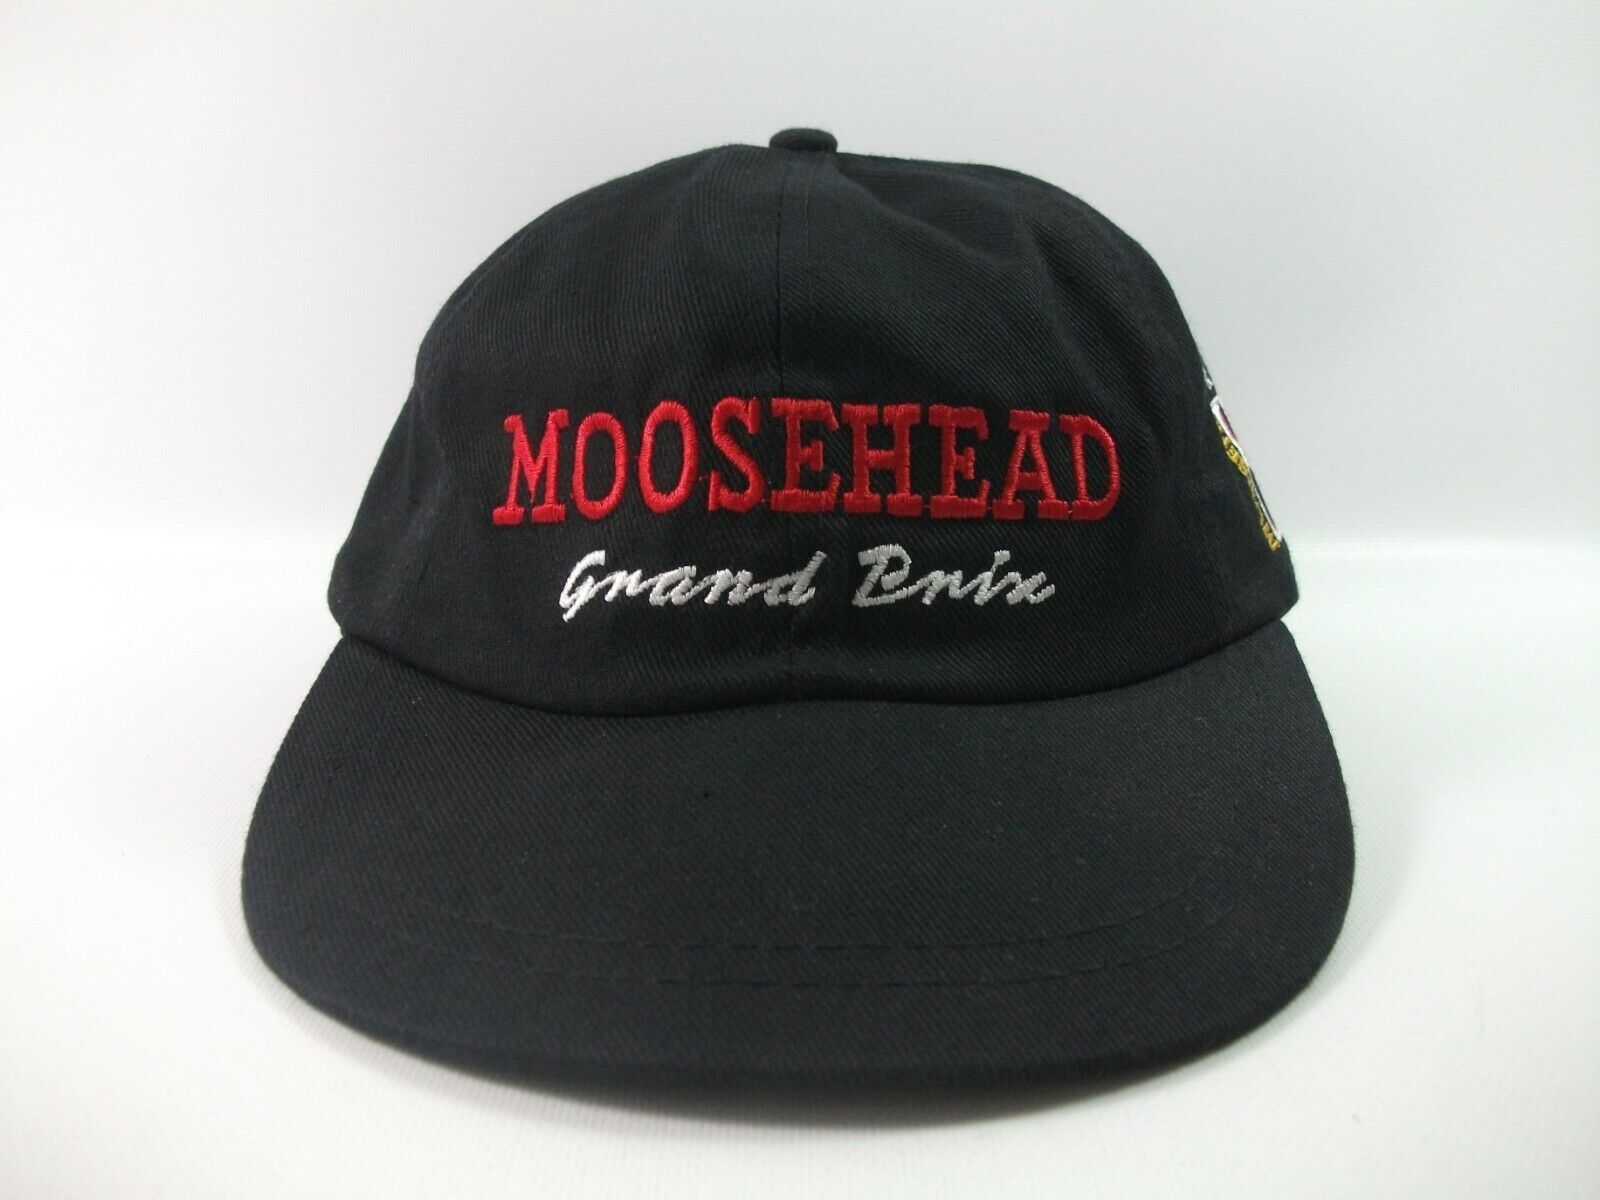 Moosehead Grand Prix Premium Dry Beer Hat Black Strapback Baseball Cap ...